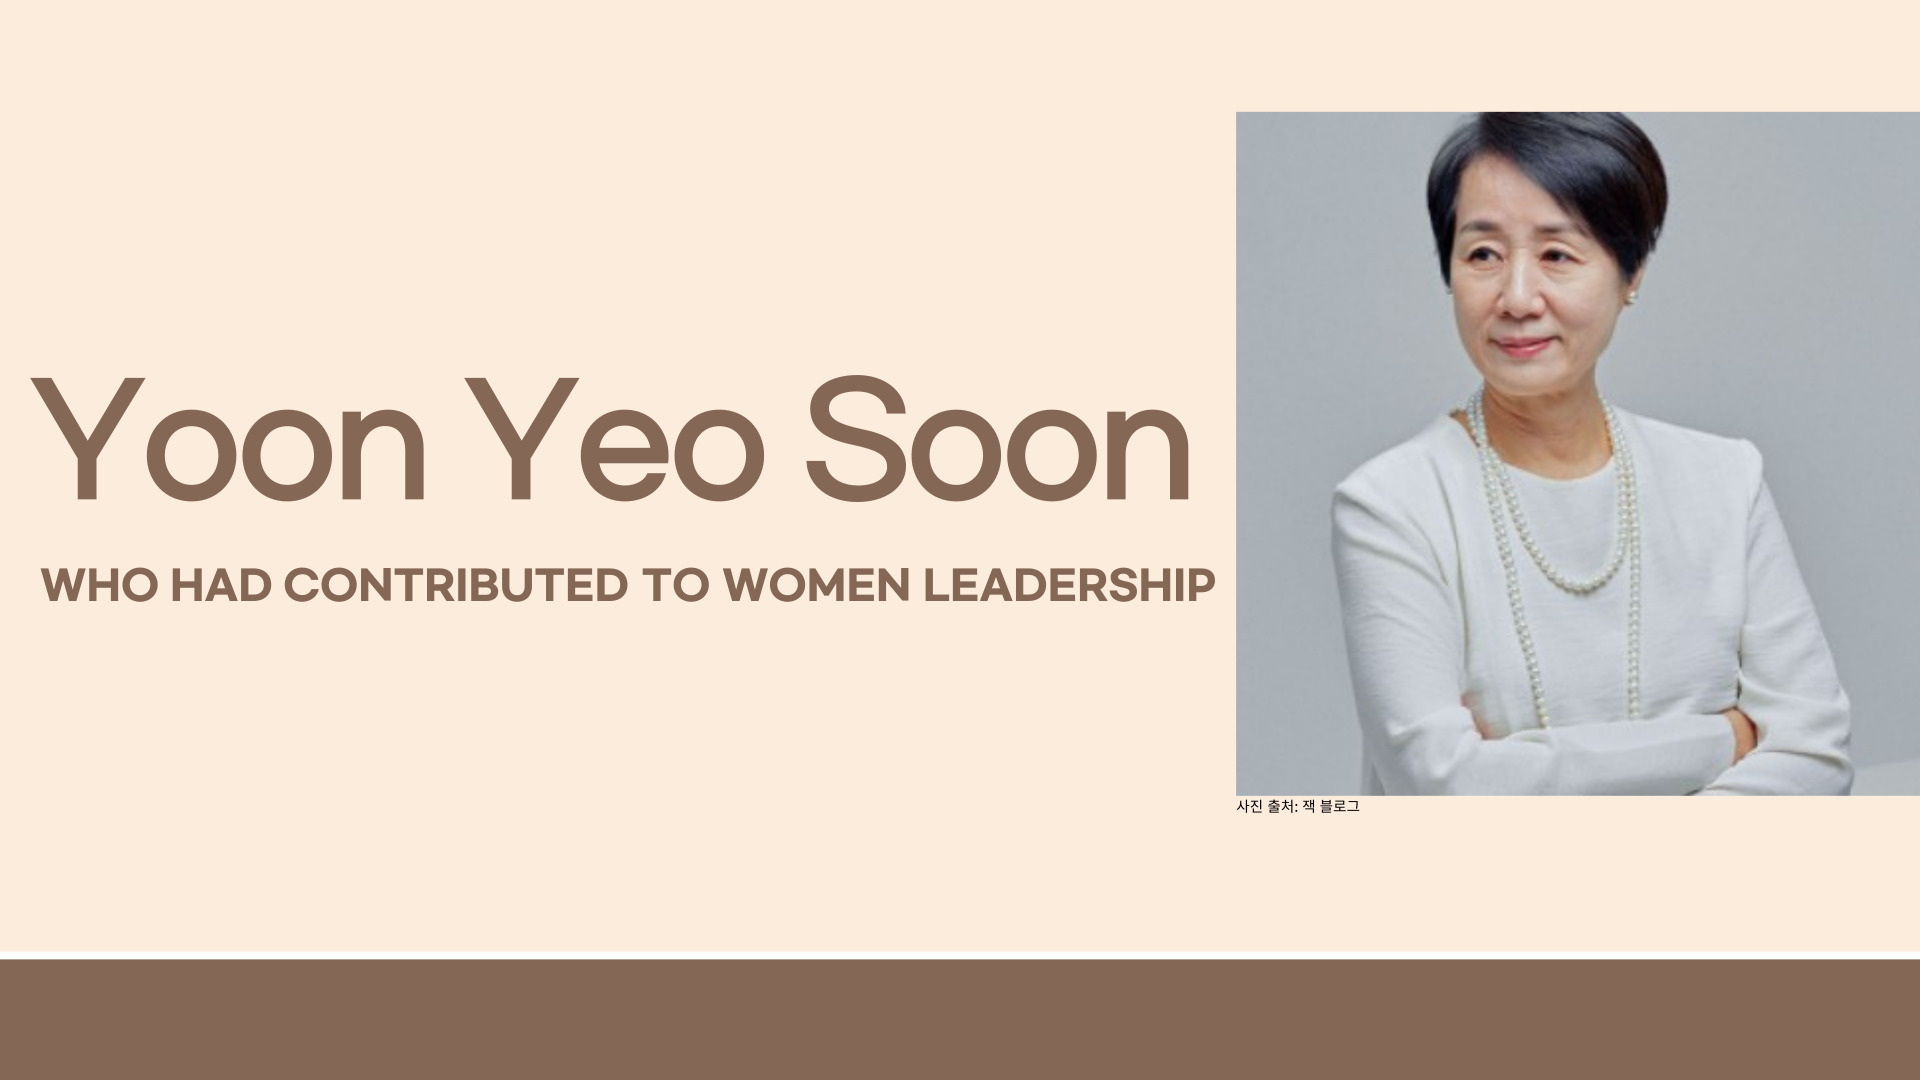 Yoon Yeo Soon